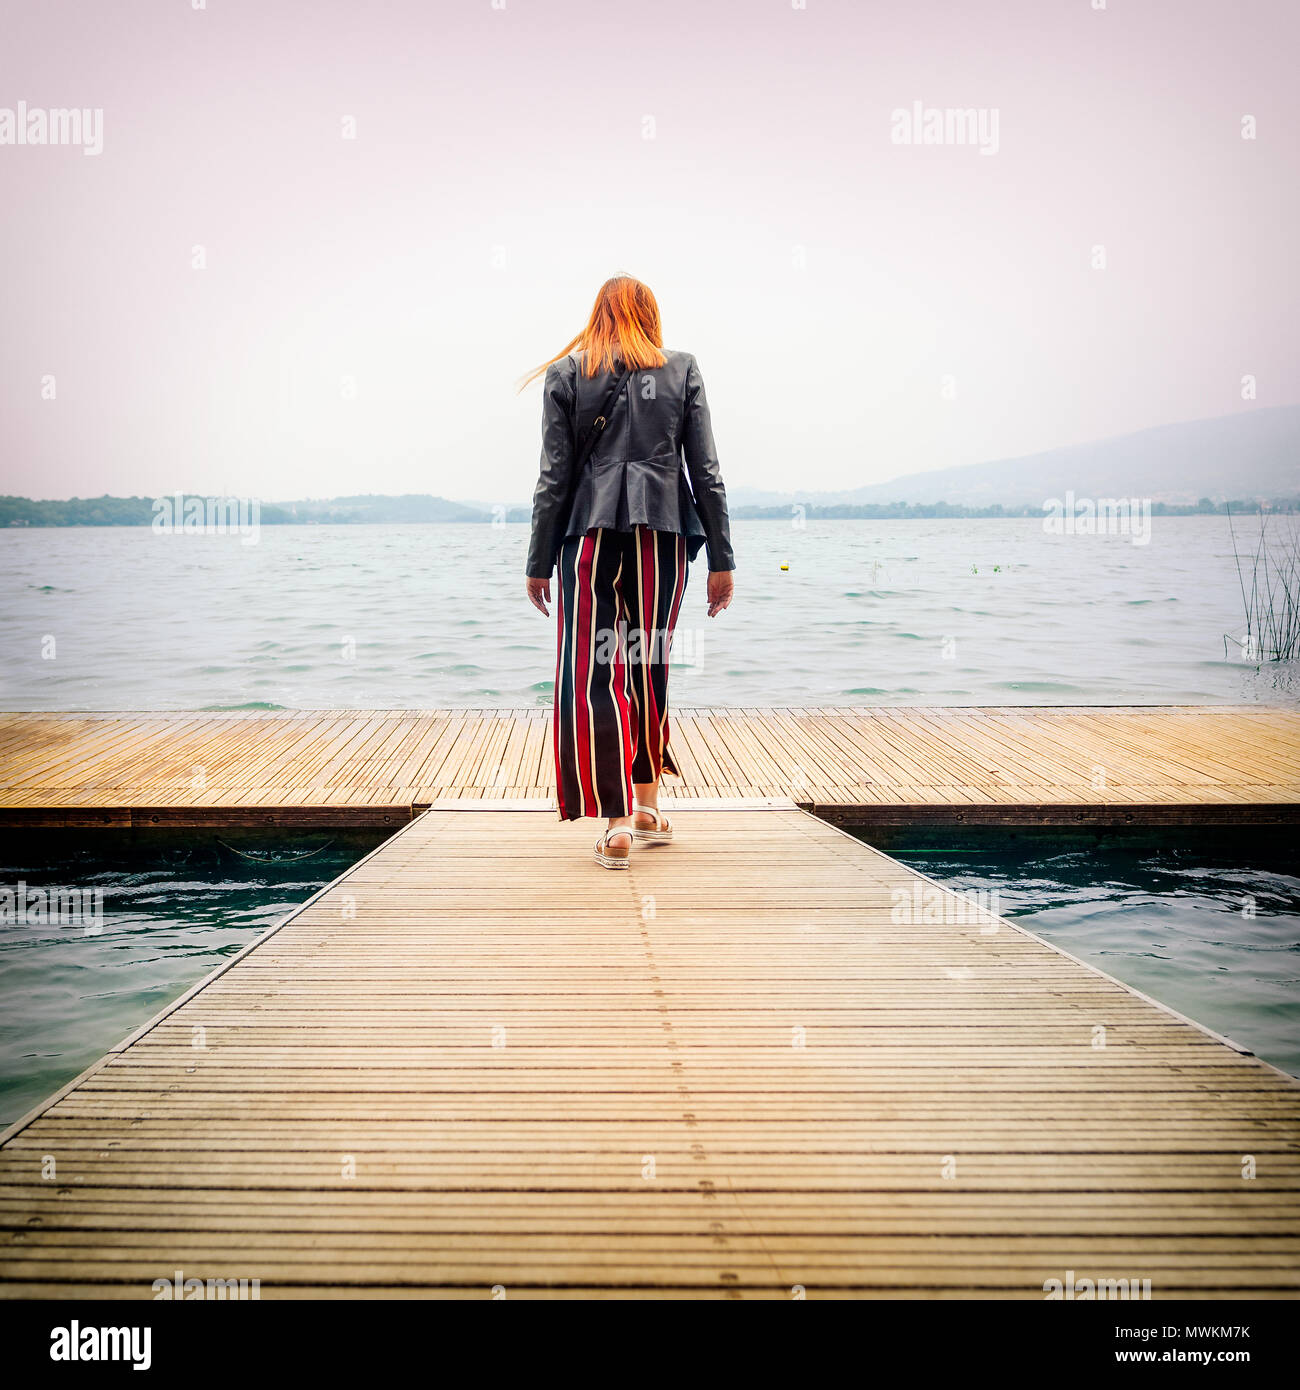 Giovane donna camminando sul molo verso il lago, il Lago di Pusiano, Lecco, Italia Foto Stock